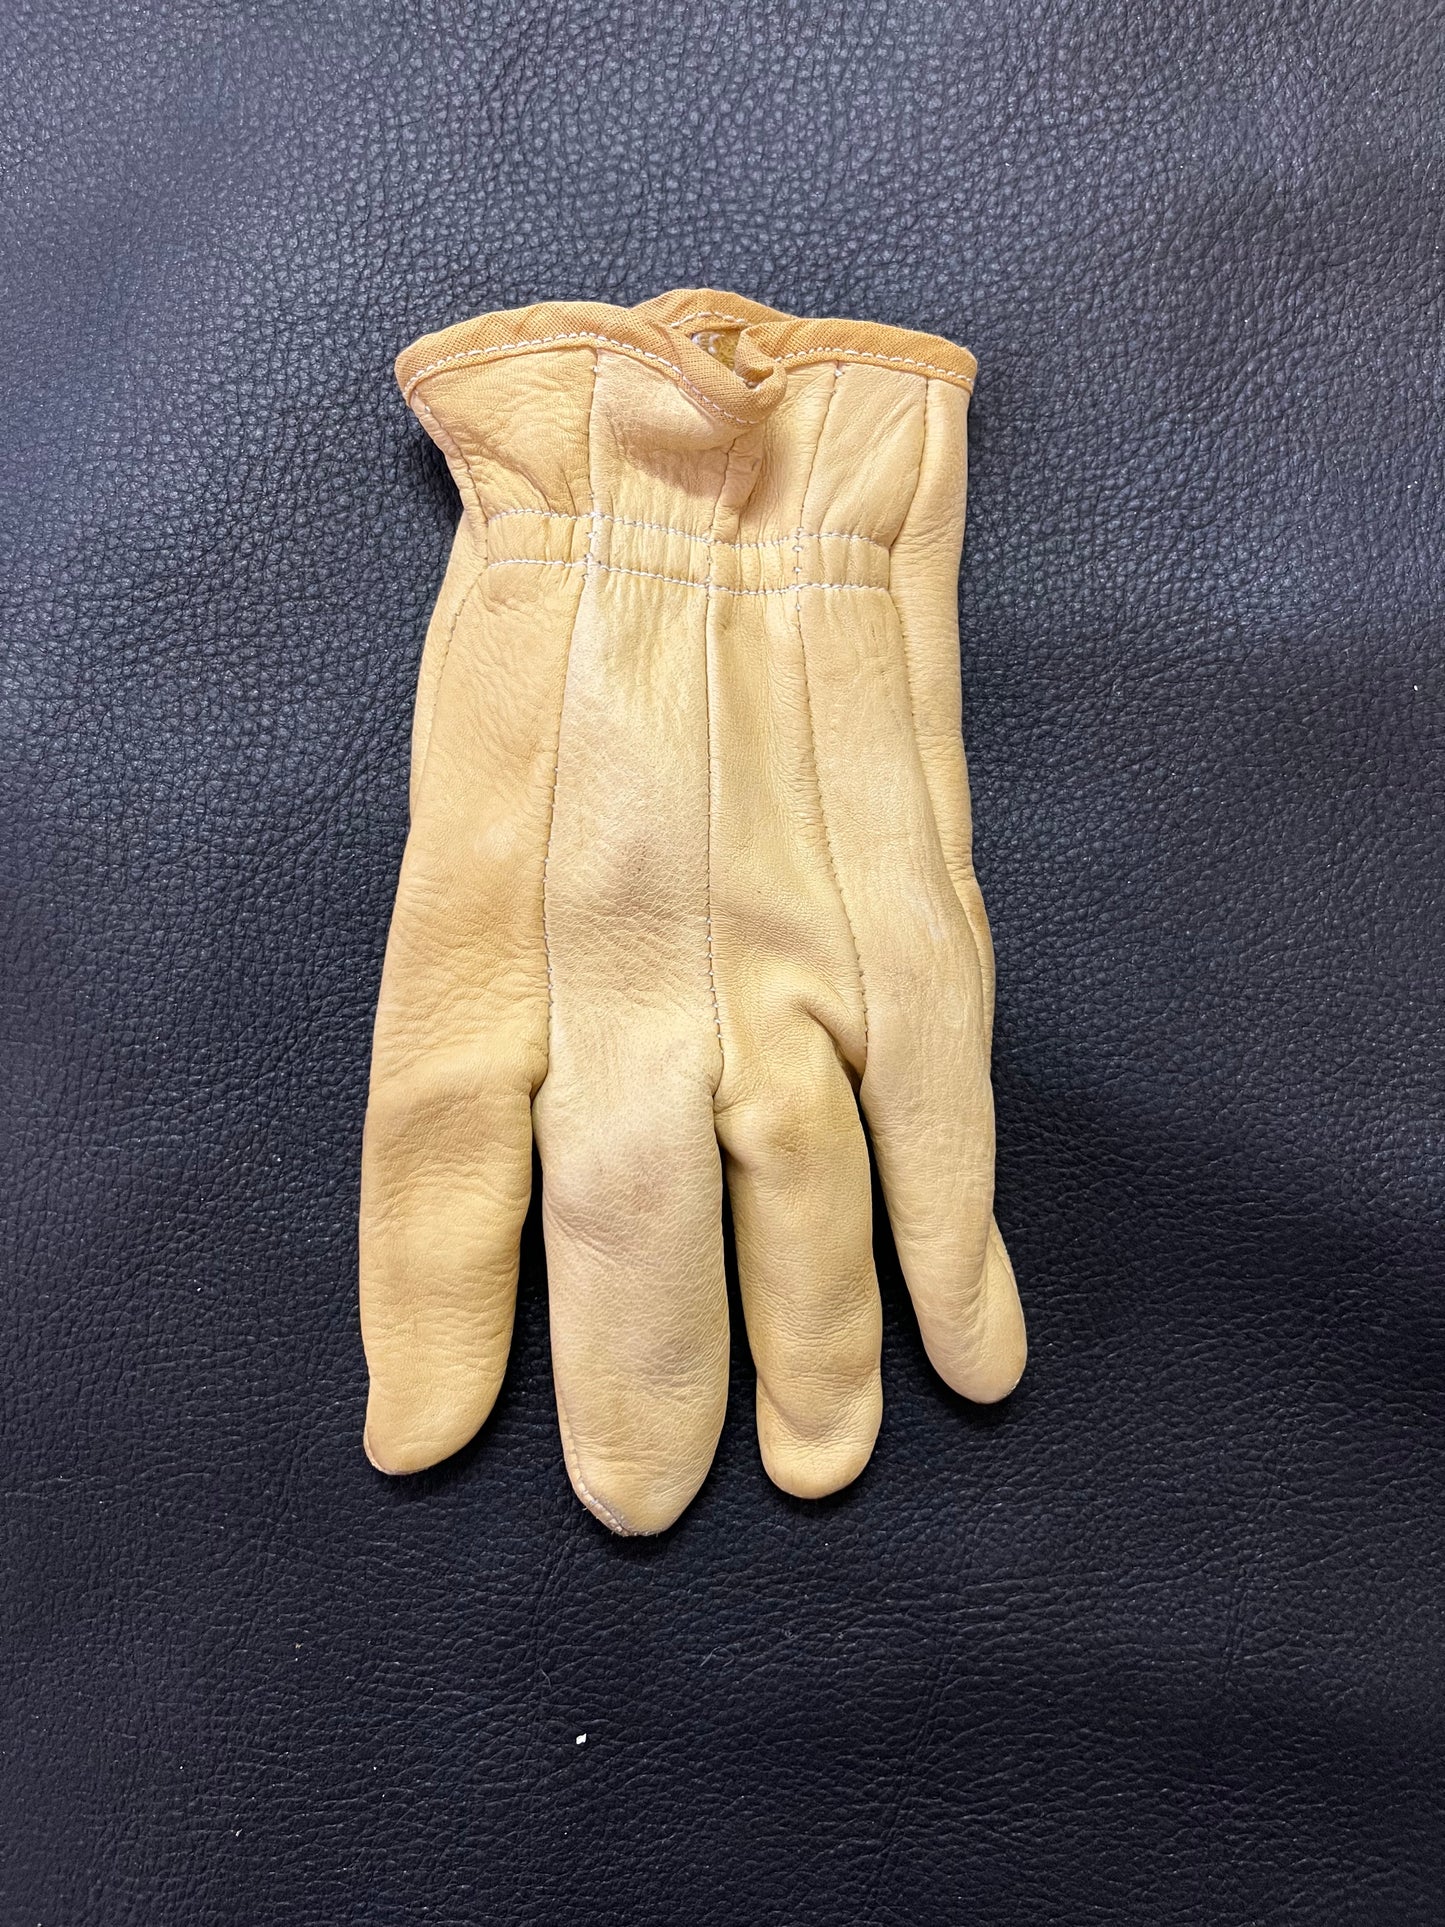 Clute Cut Style Glove